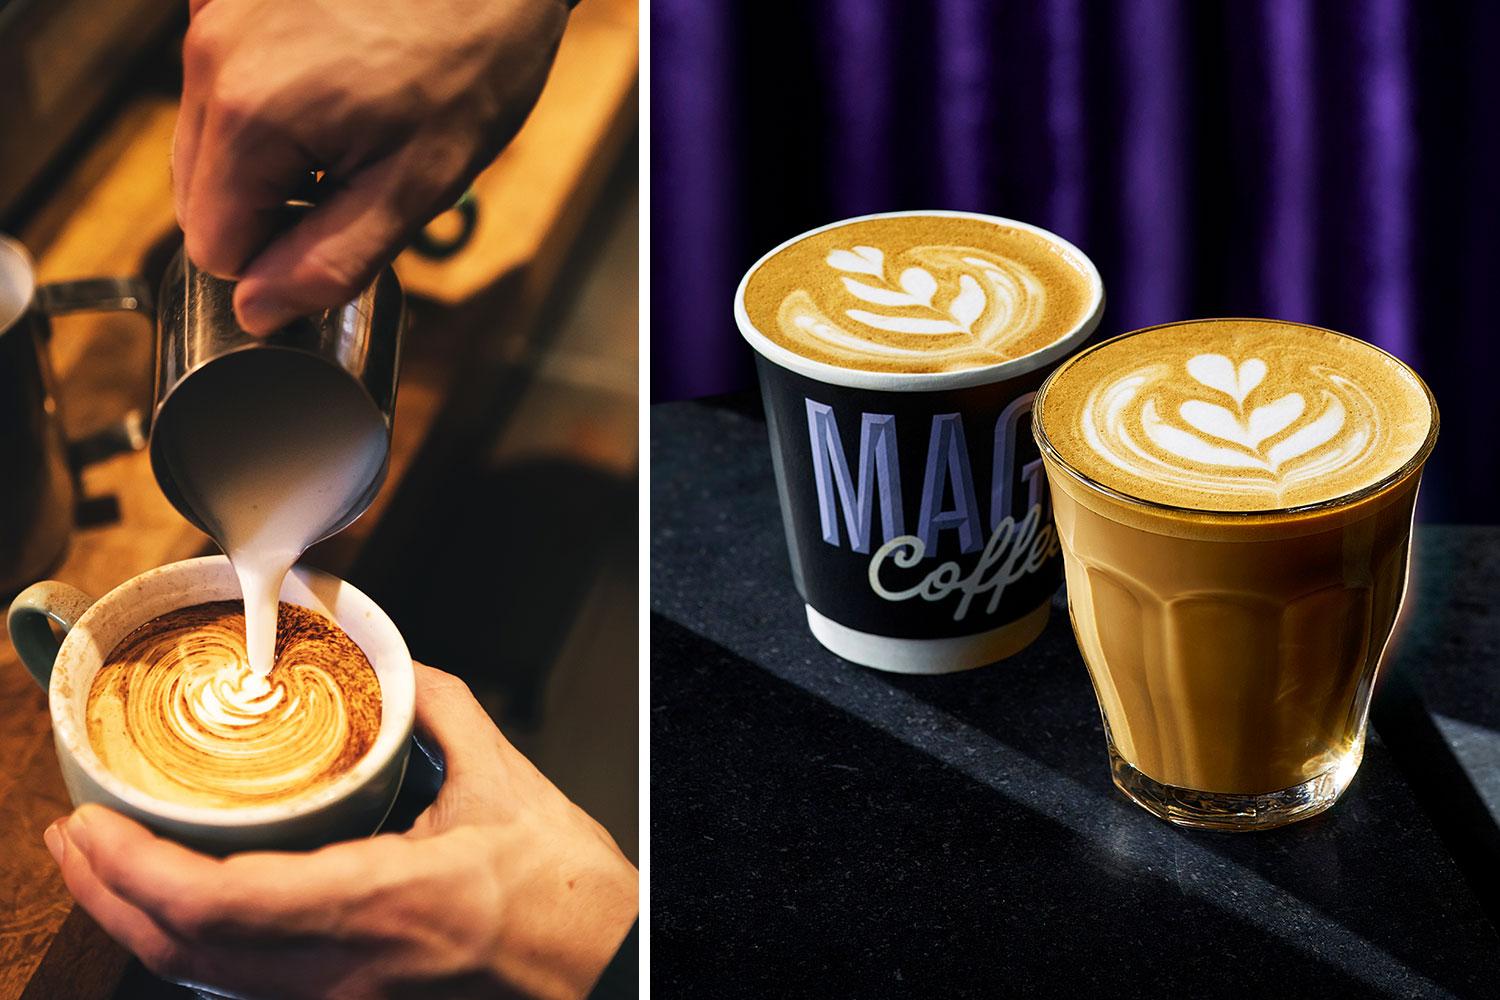 Magic Coffee in Cups